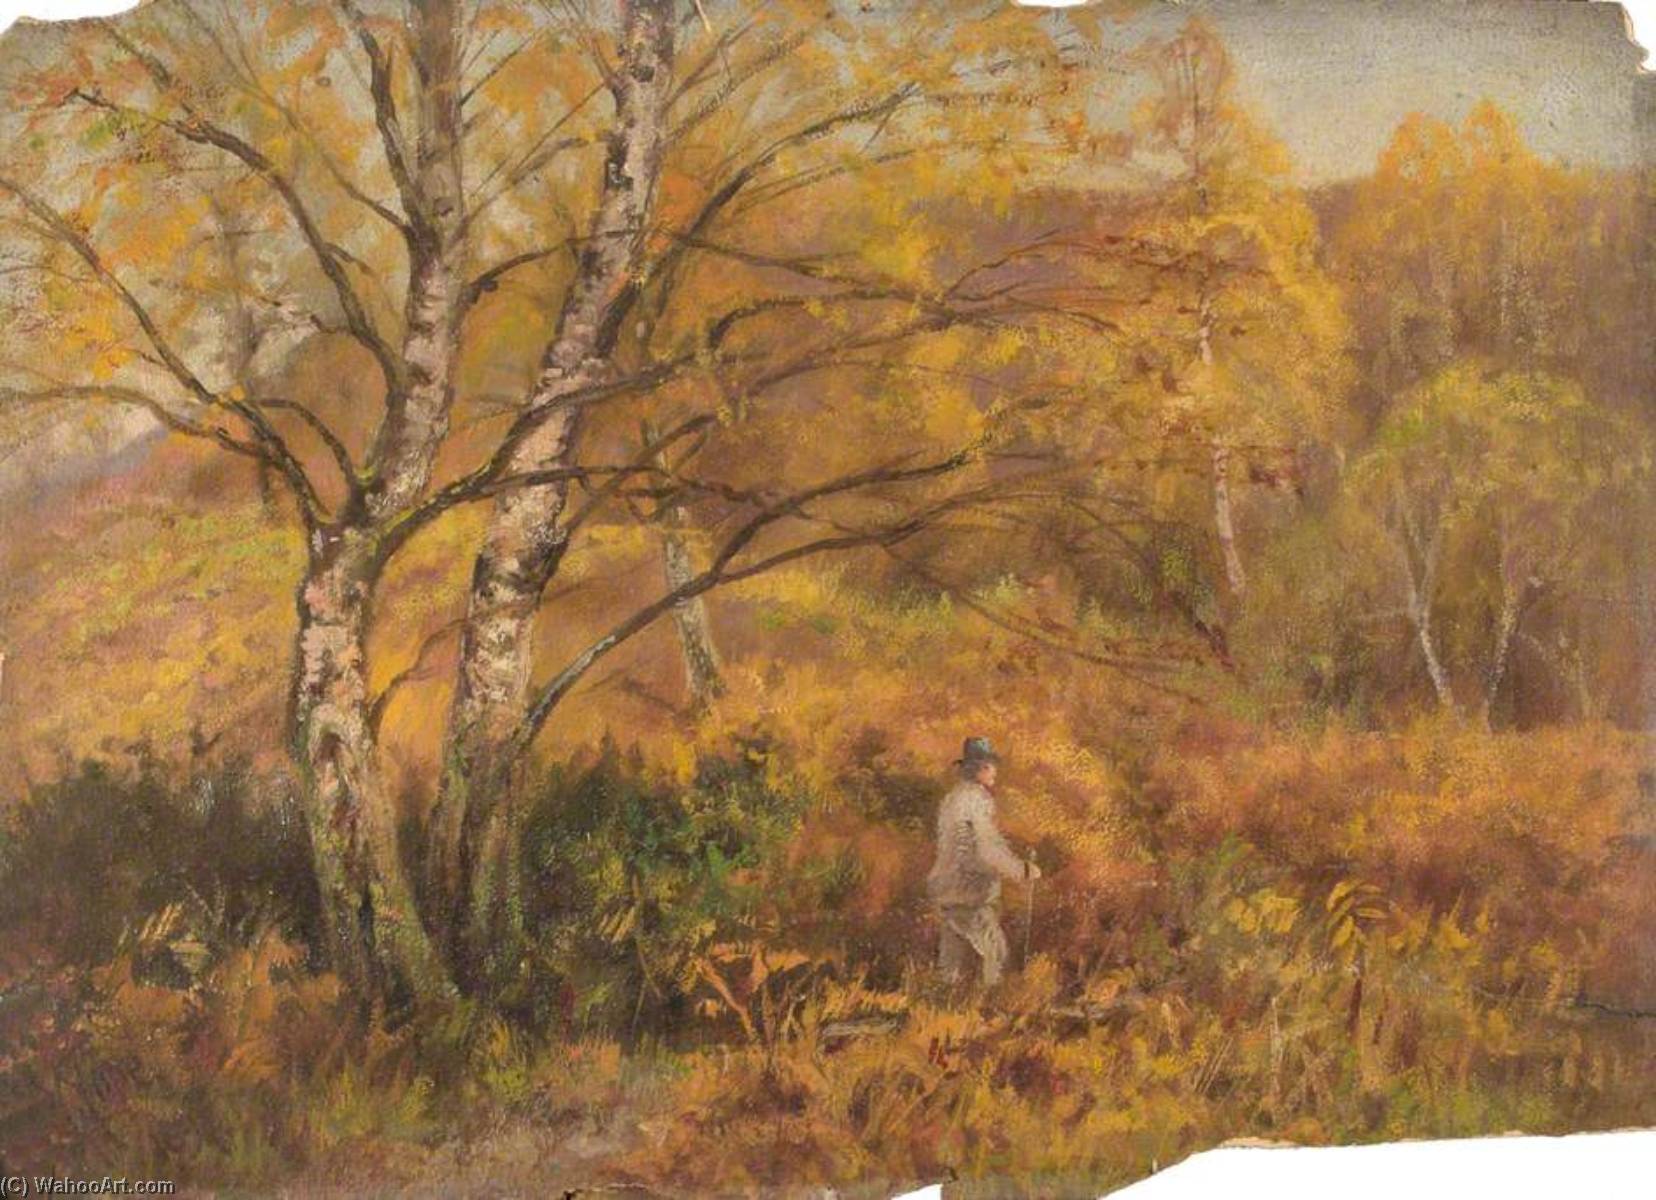 Achat Reproductions De Qualité Musée A Addington Park, Croydon, Surrey, 1897 de William Henry Hope (1835-1917) | ArtsDot.com